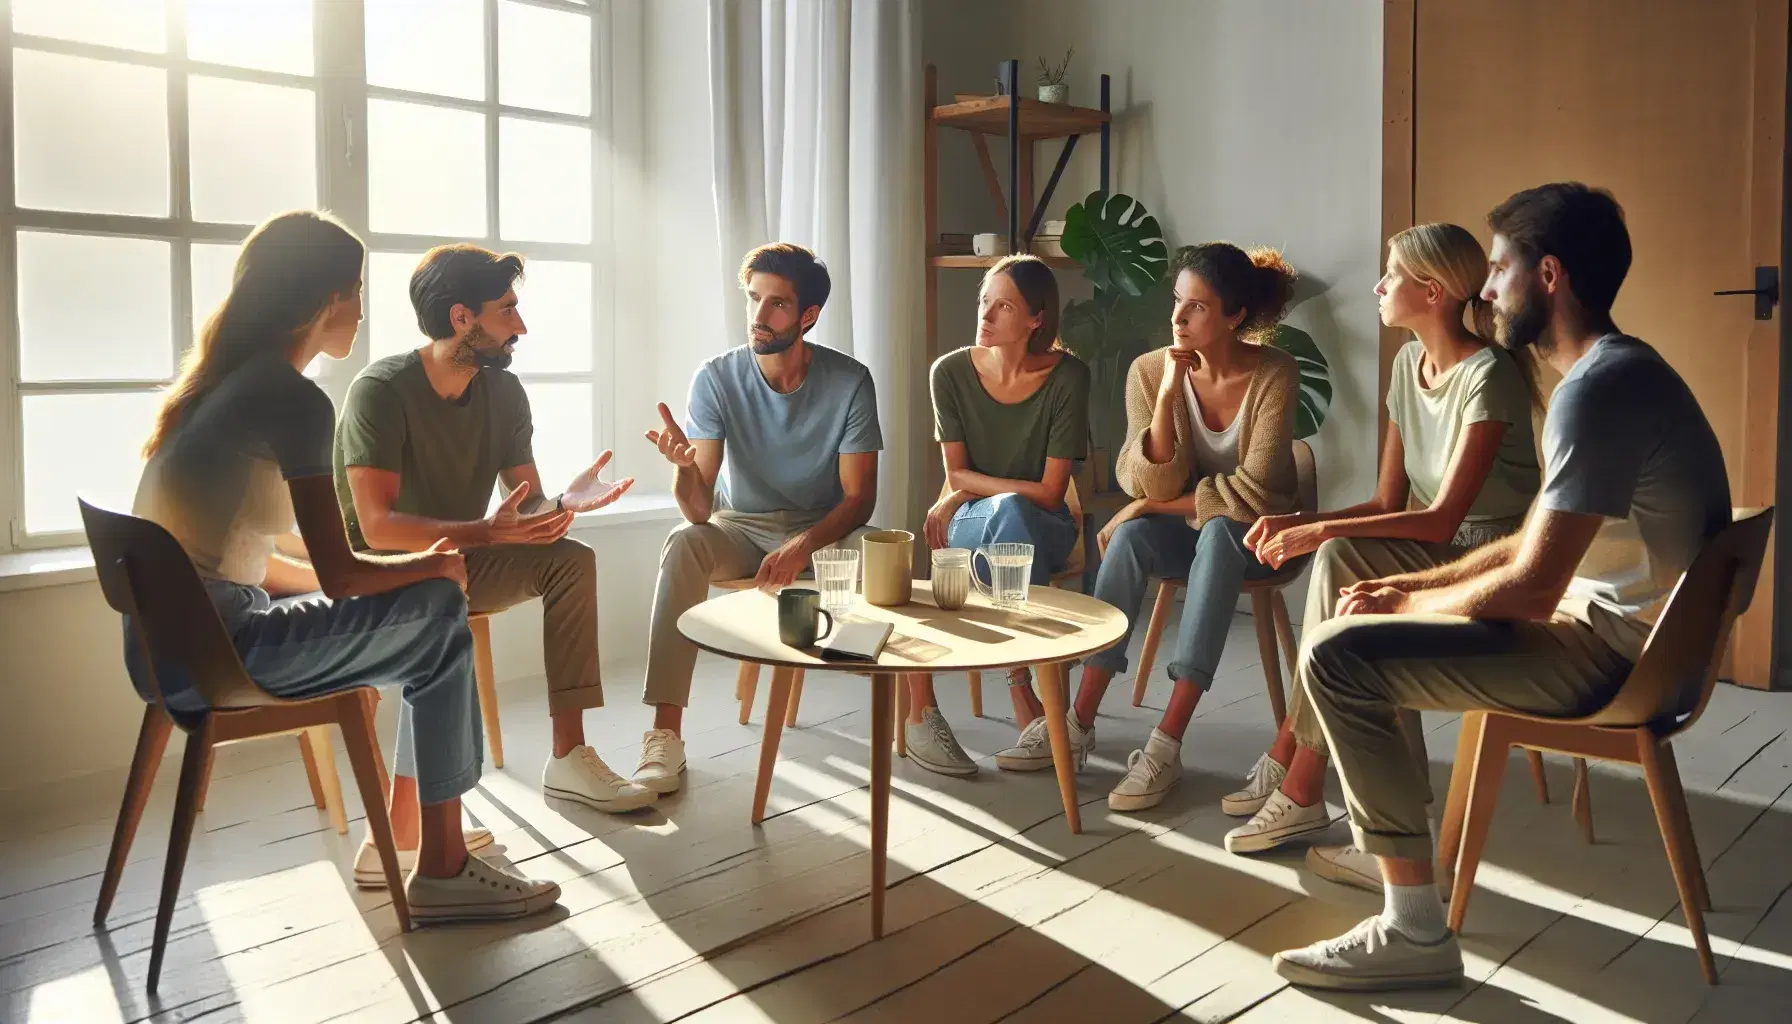 Grupo diverso de cinco personas sentadas en círculo en una sala iluminada naturalmente, conversando alrededor de una mesa con tazas, en un ambiente relajado.